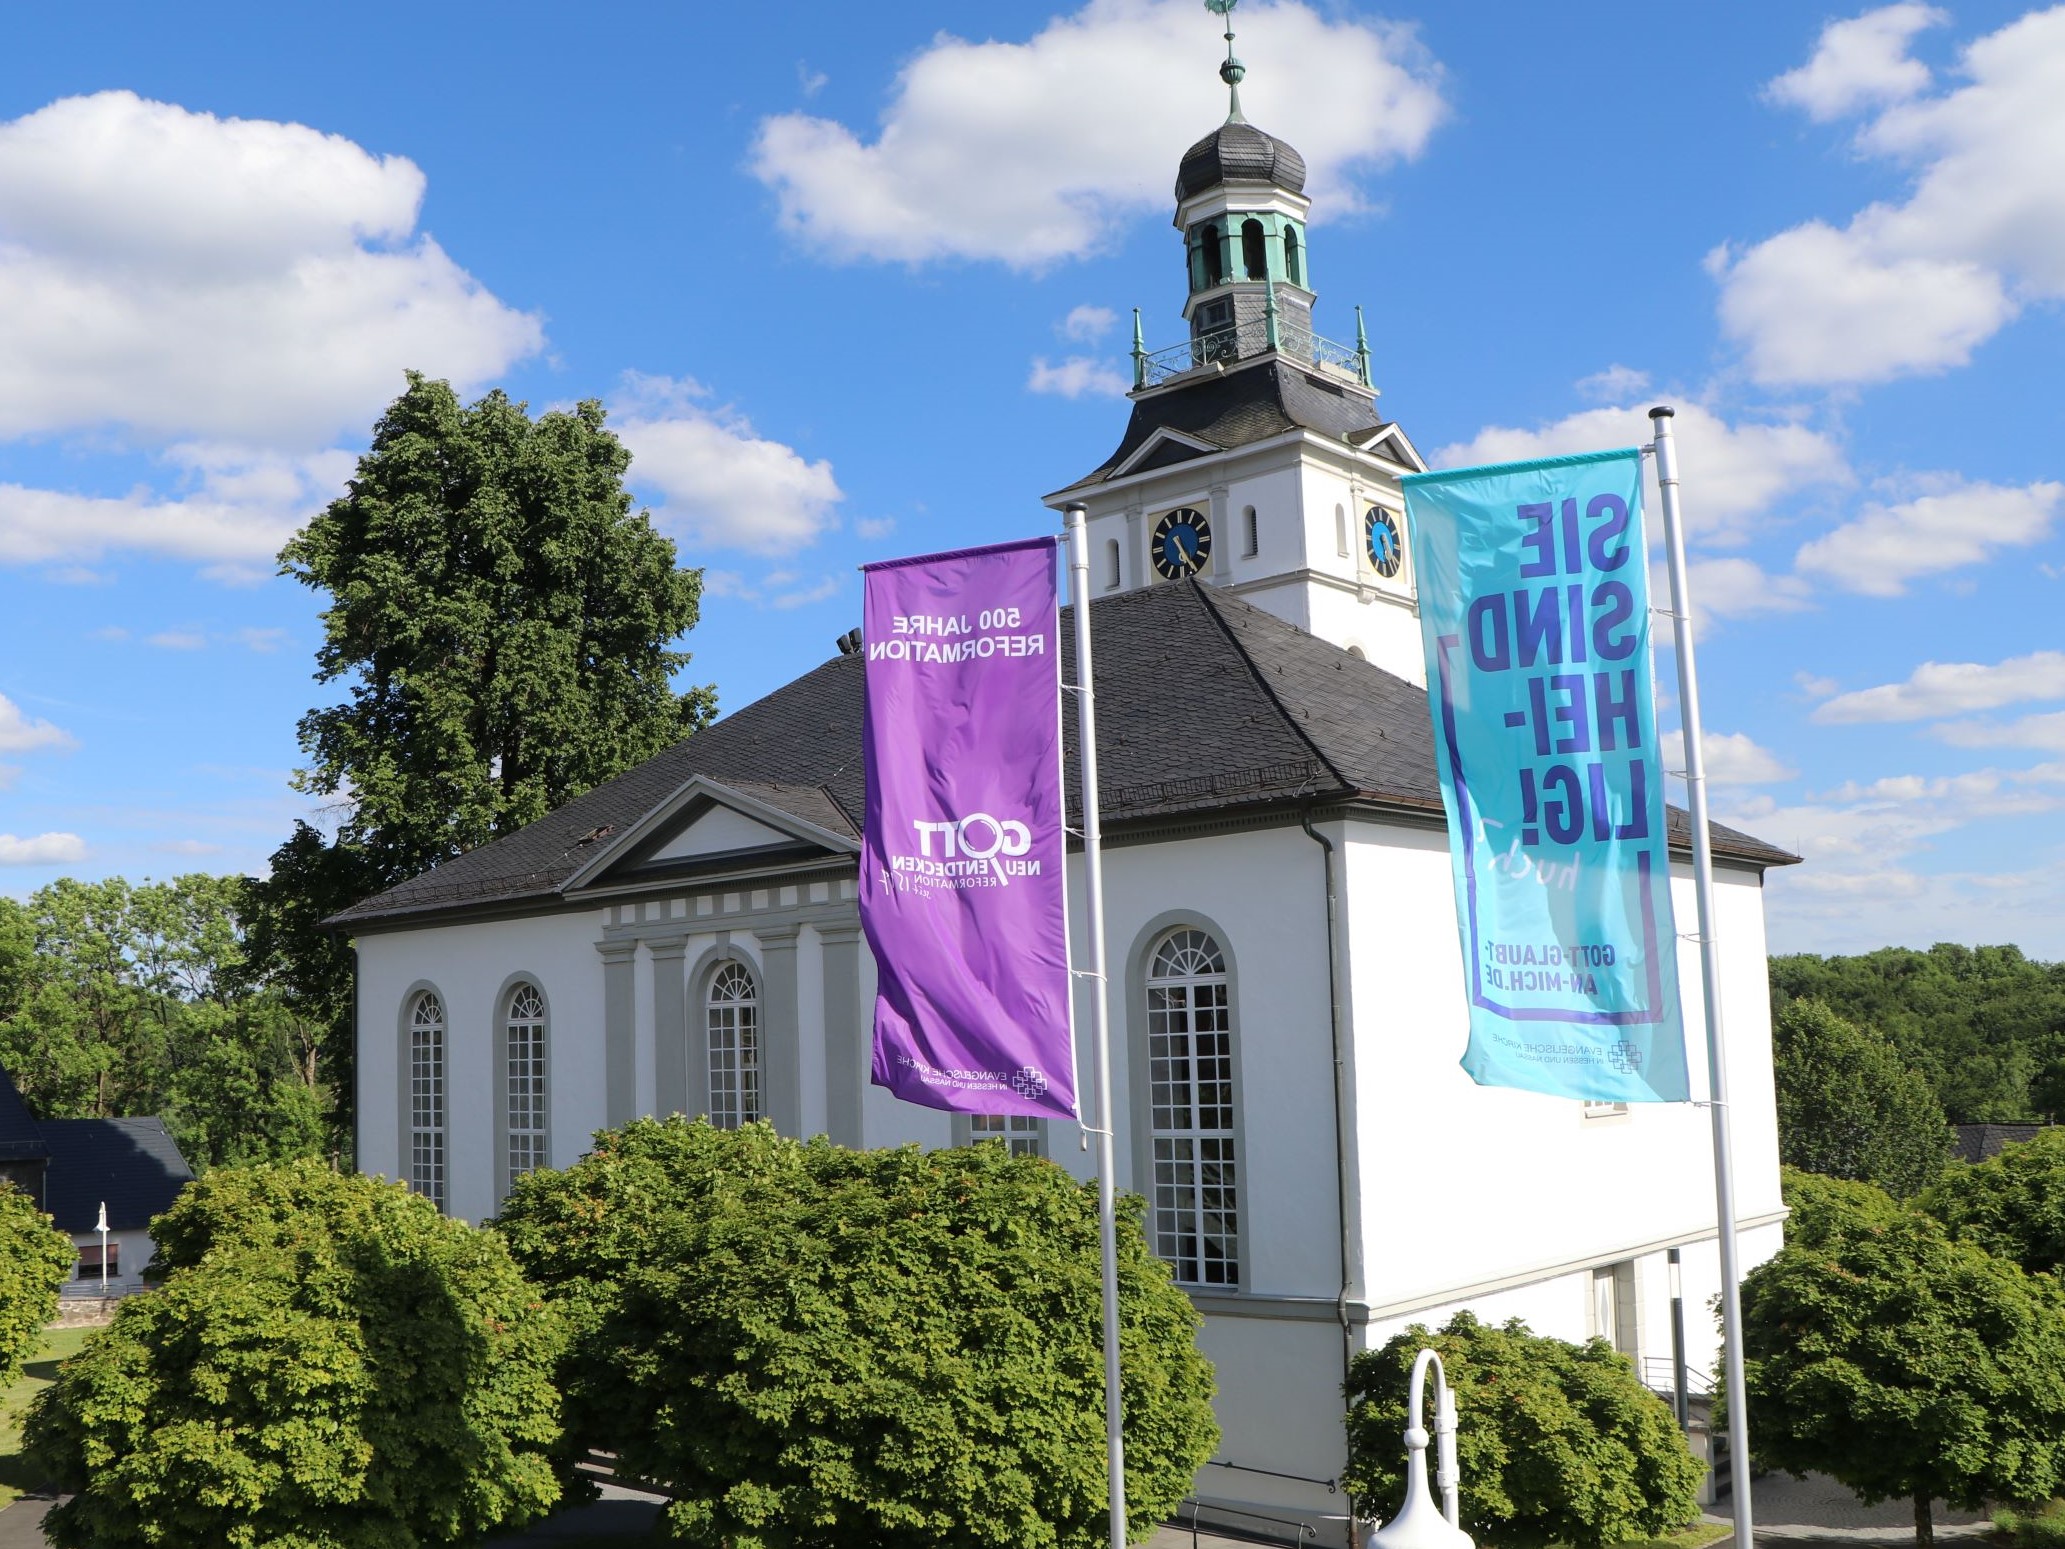 Bilder Evangelische Kirche Bad Marienberg - Evangelische Kirchengemeinde Bad Marienberg